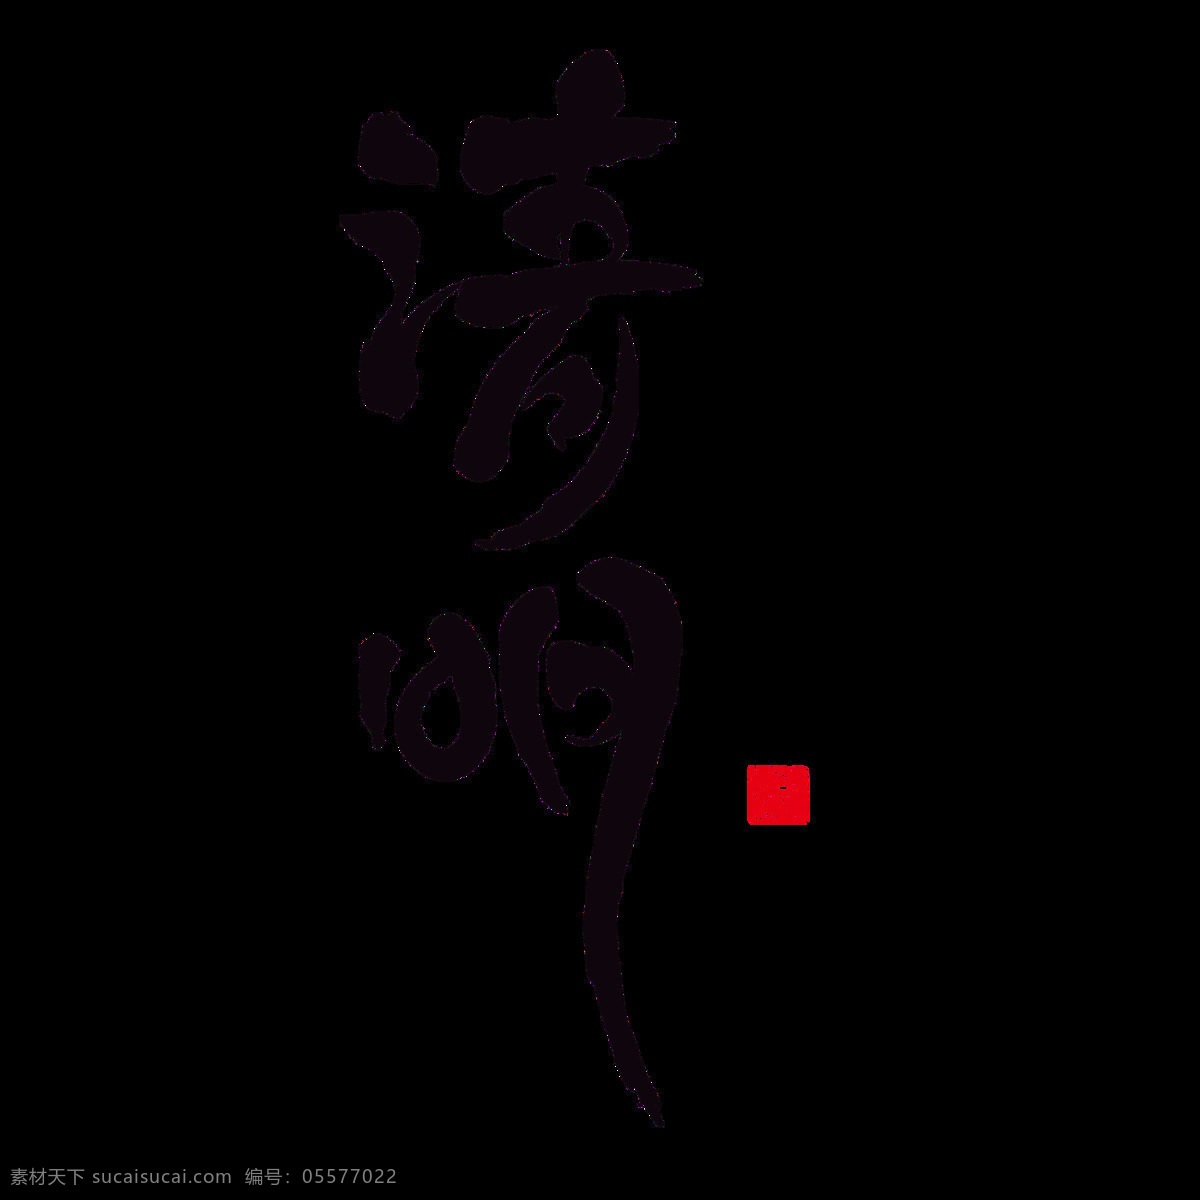 黑色 清明 书法 字体 元素 二十四节气 传统节日 中国风元素 黑色字体 清明字体 元素设计 清明素材 杏花村 清明节日元素 清明元素设计